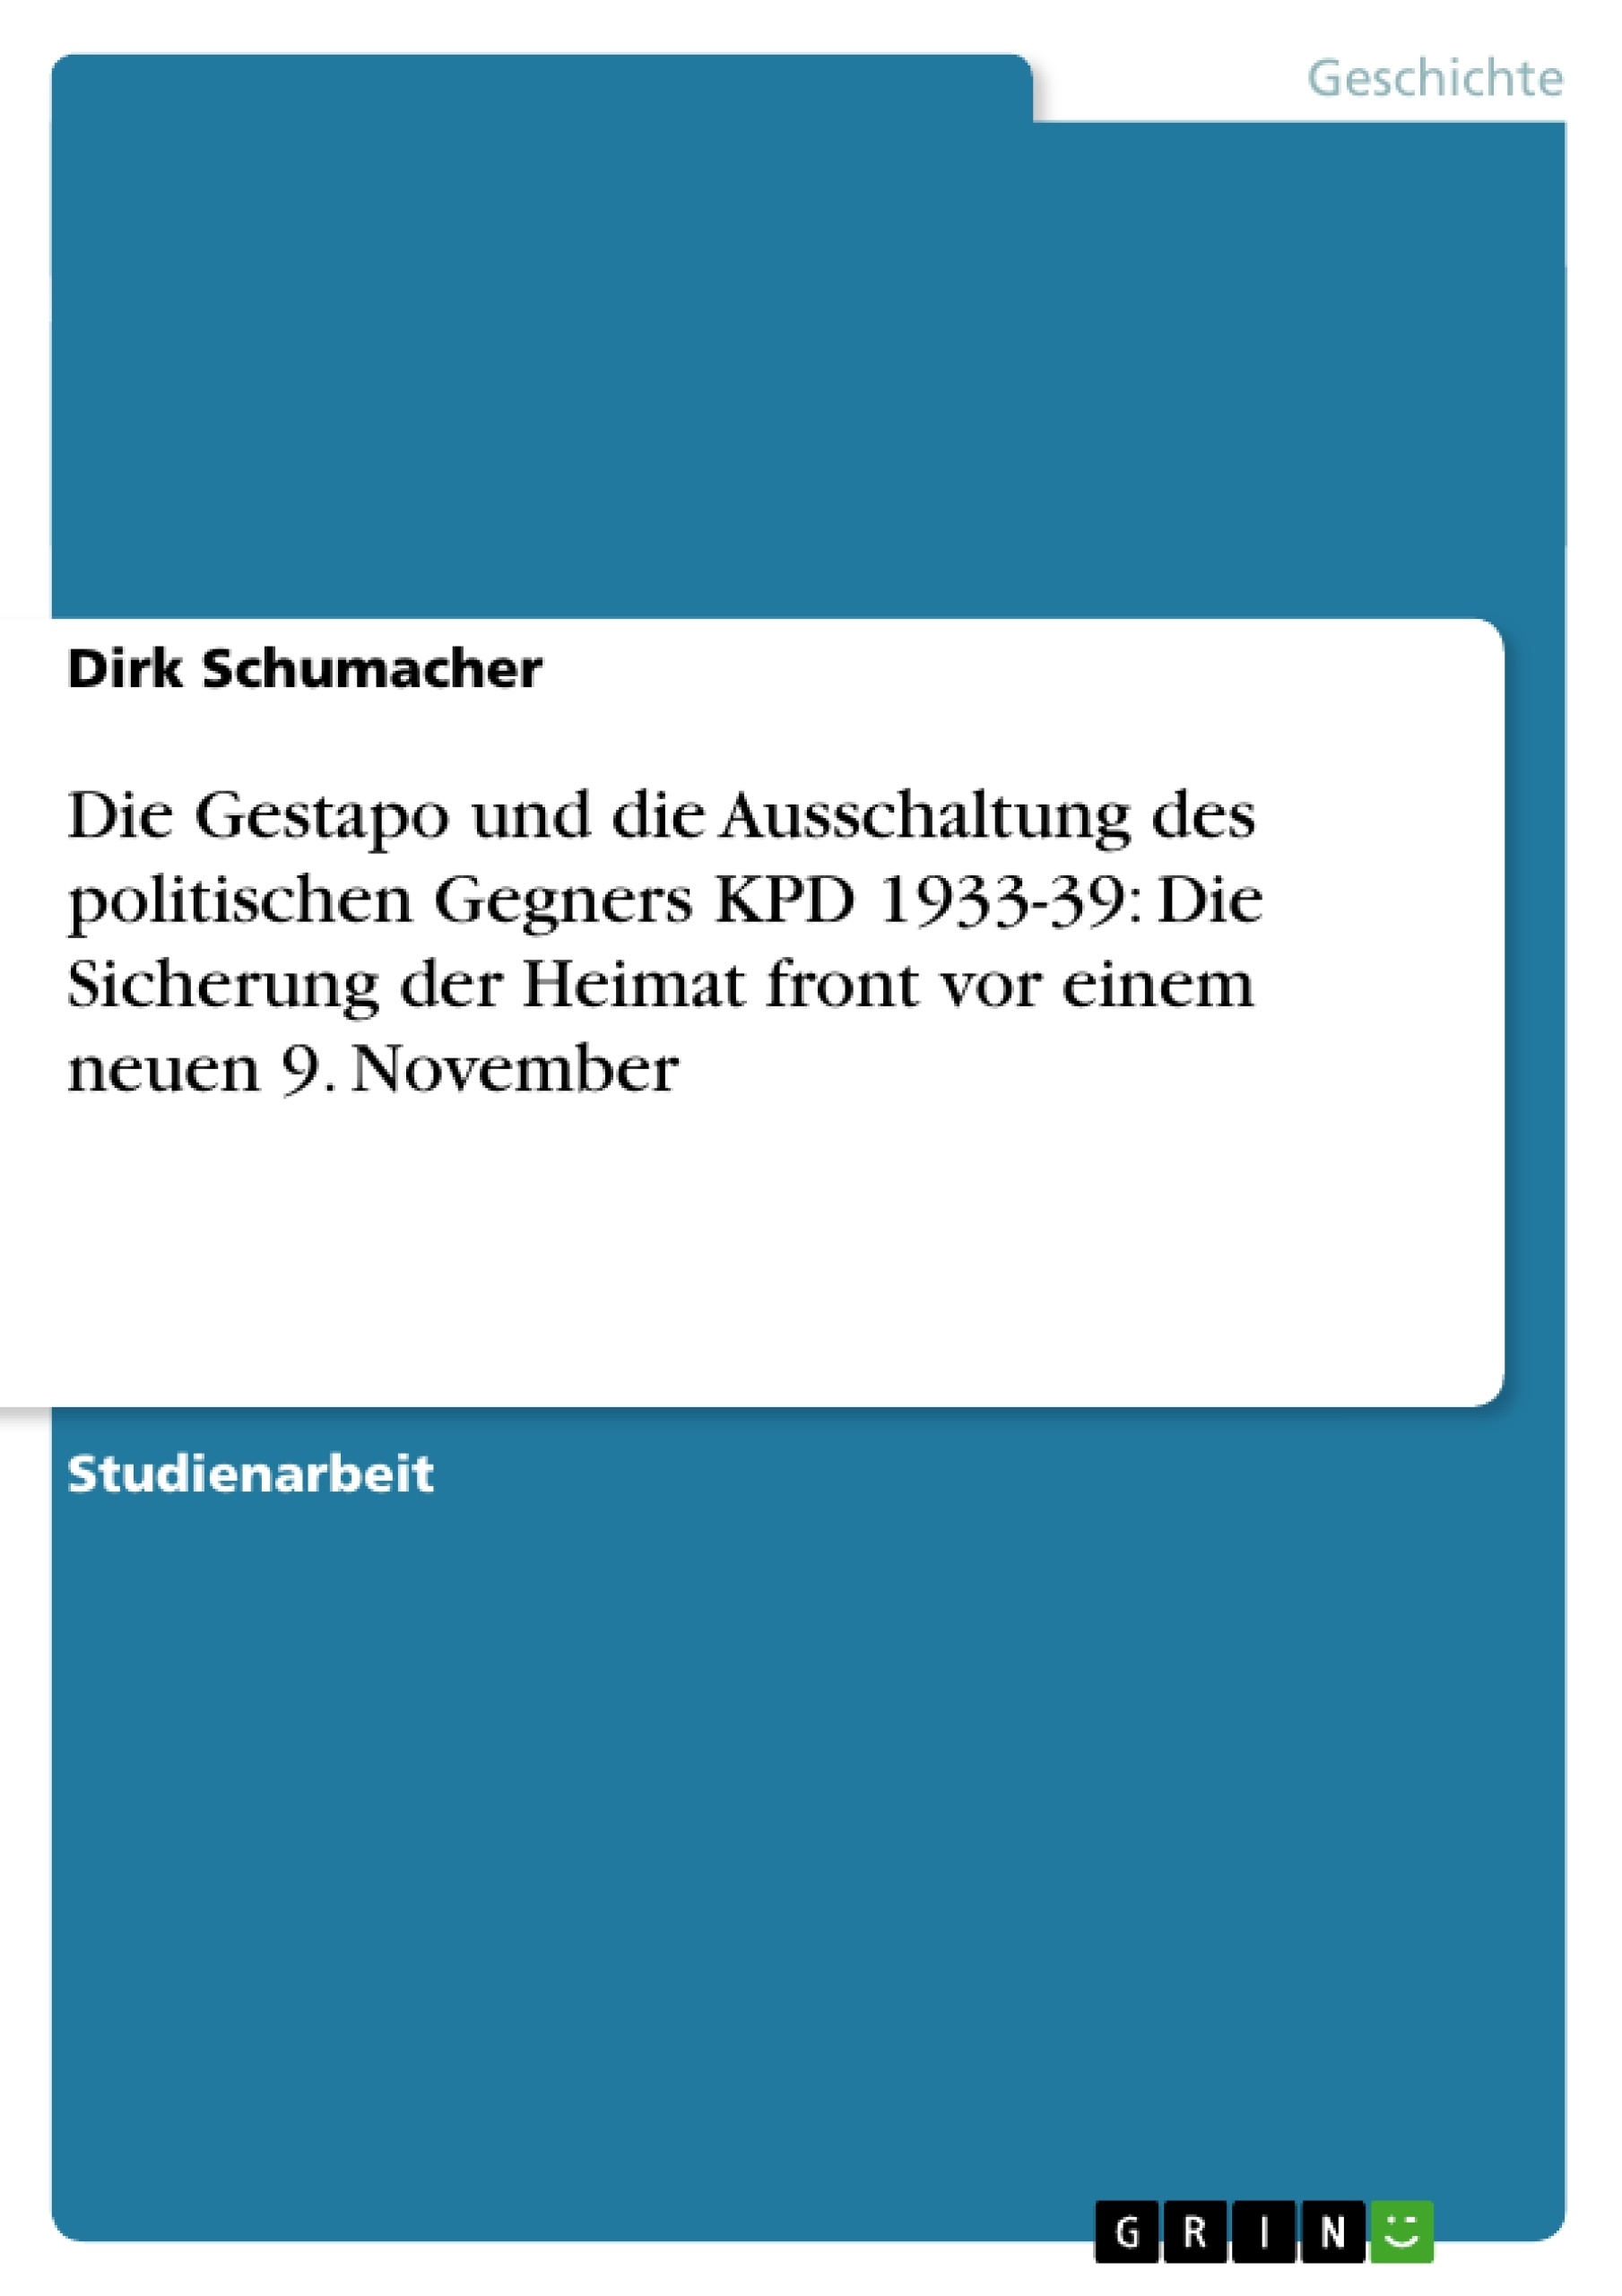 Titre: Die Gestapo und die Ausschaltung des politischen Gegners KPD 1933-39: Die Sicherung der Heimat front vor einem neuen 9. November